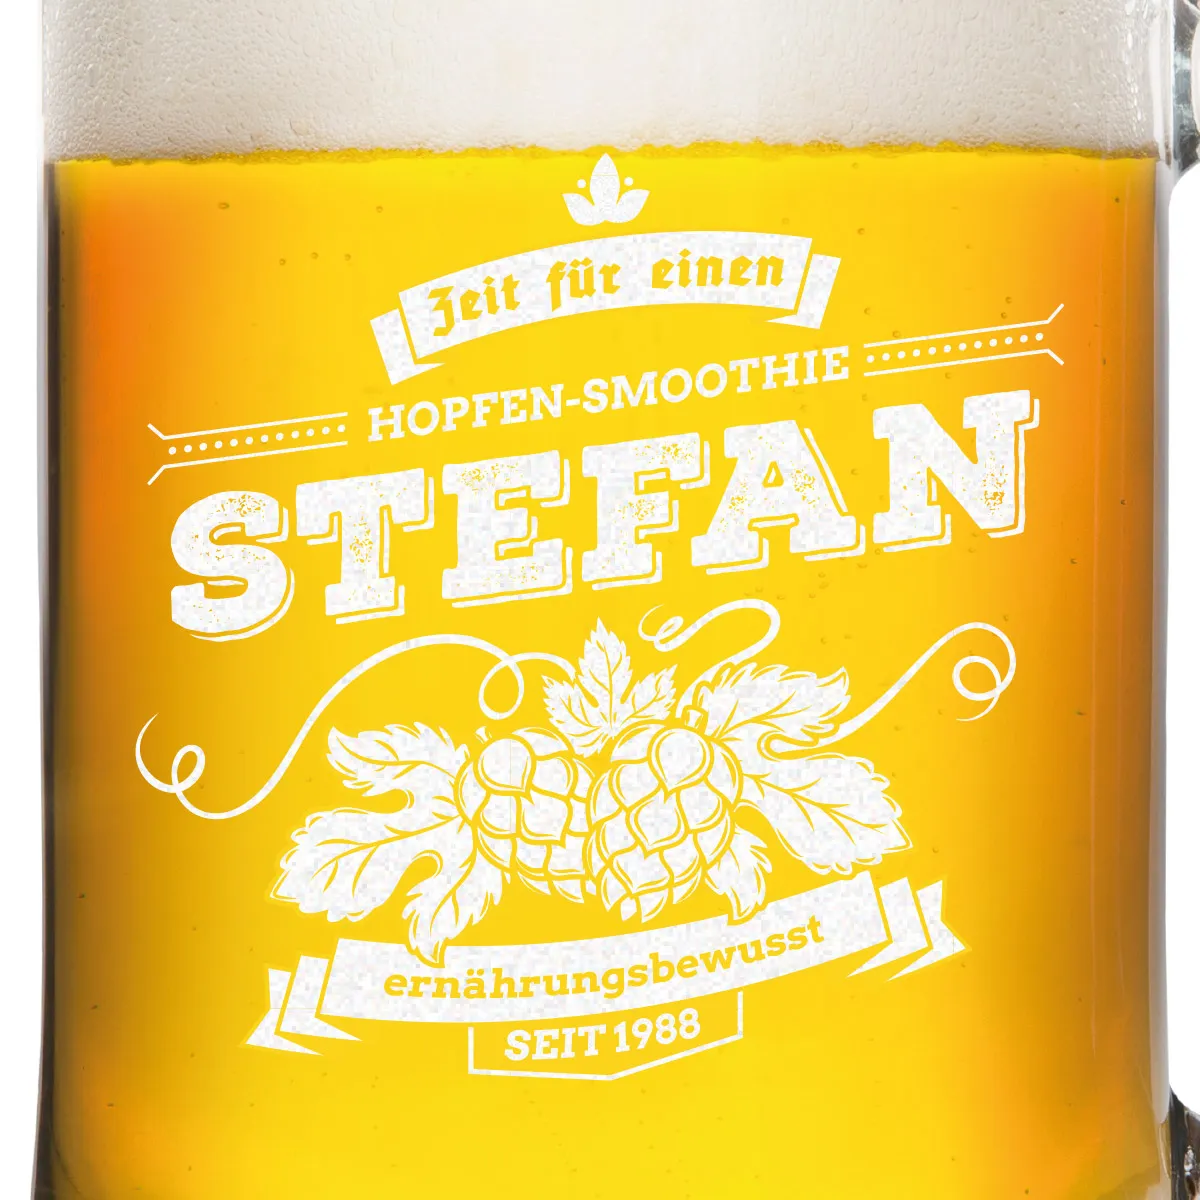 Montana Bierkrug - Hopfen-Smoothie